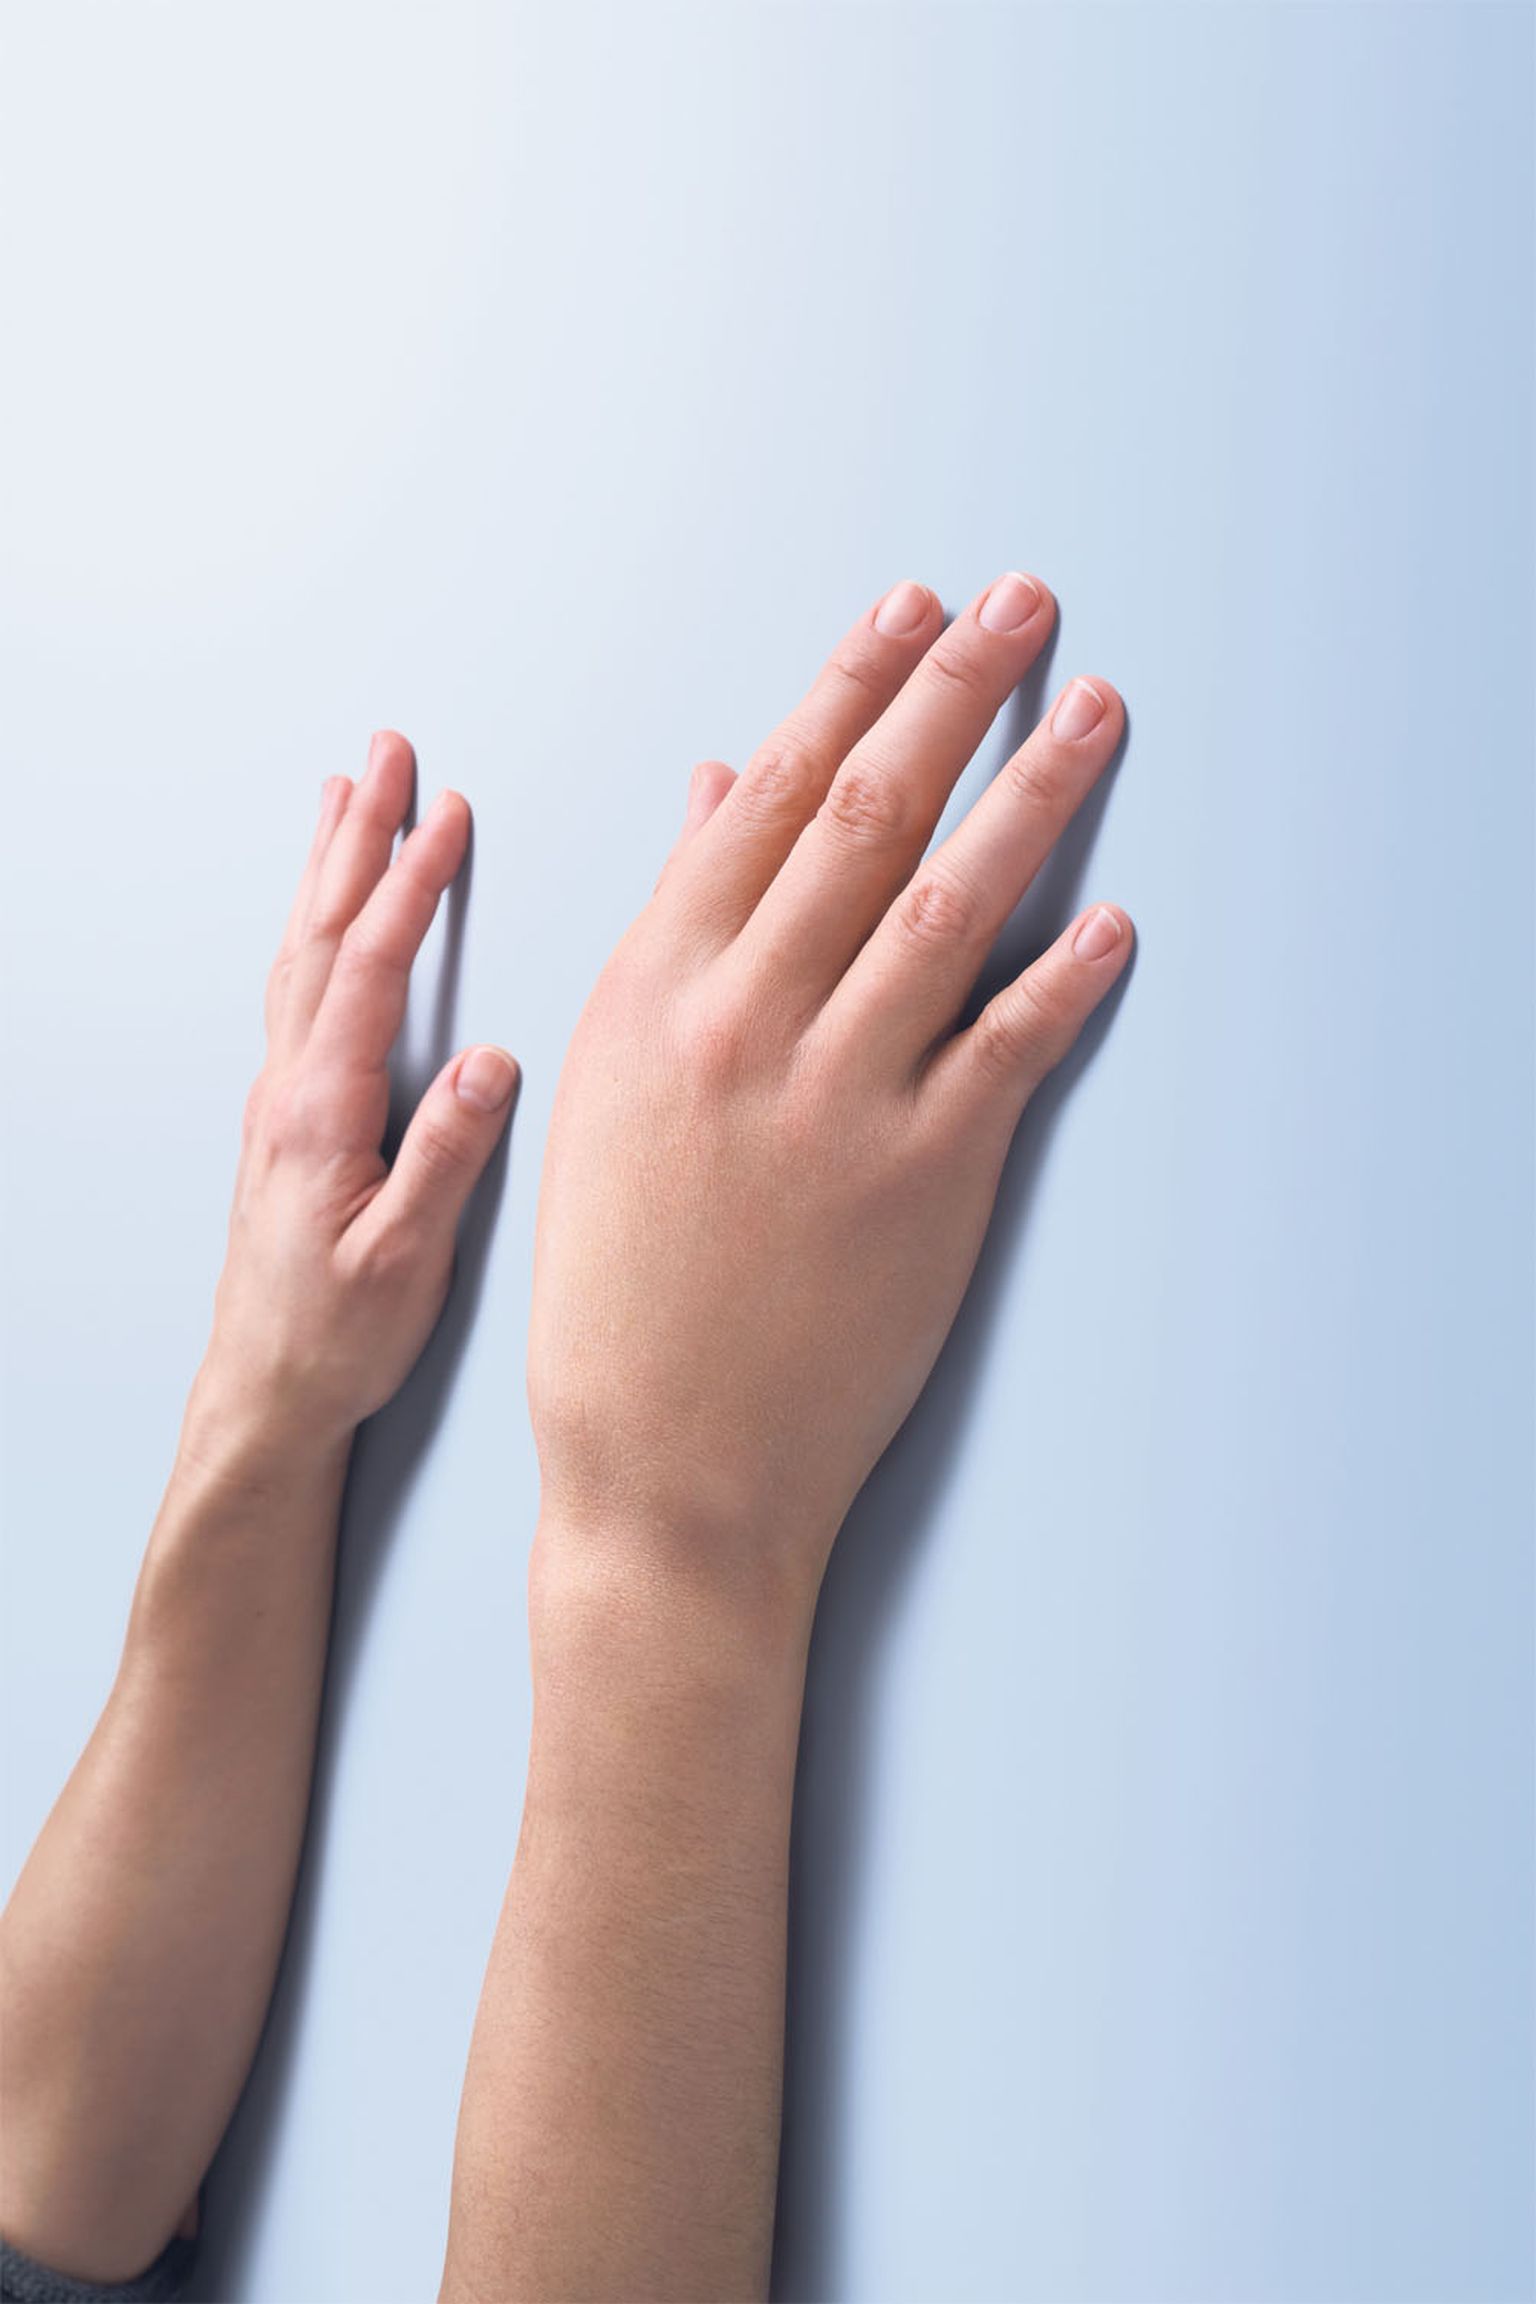 Наследственный ангионевротический отек (НАО) - редкое заболевание, основным симптомом которого являются отеки на лице, в гортани, в животе и по телу, часто путают с аллергией. На снимке отек руки, вызванный НАО.